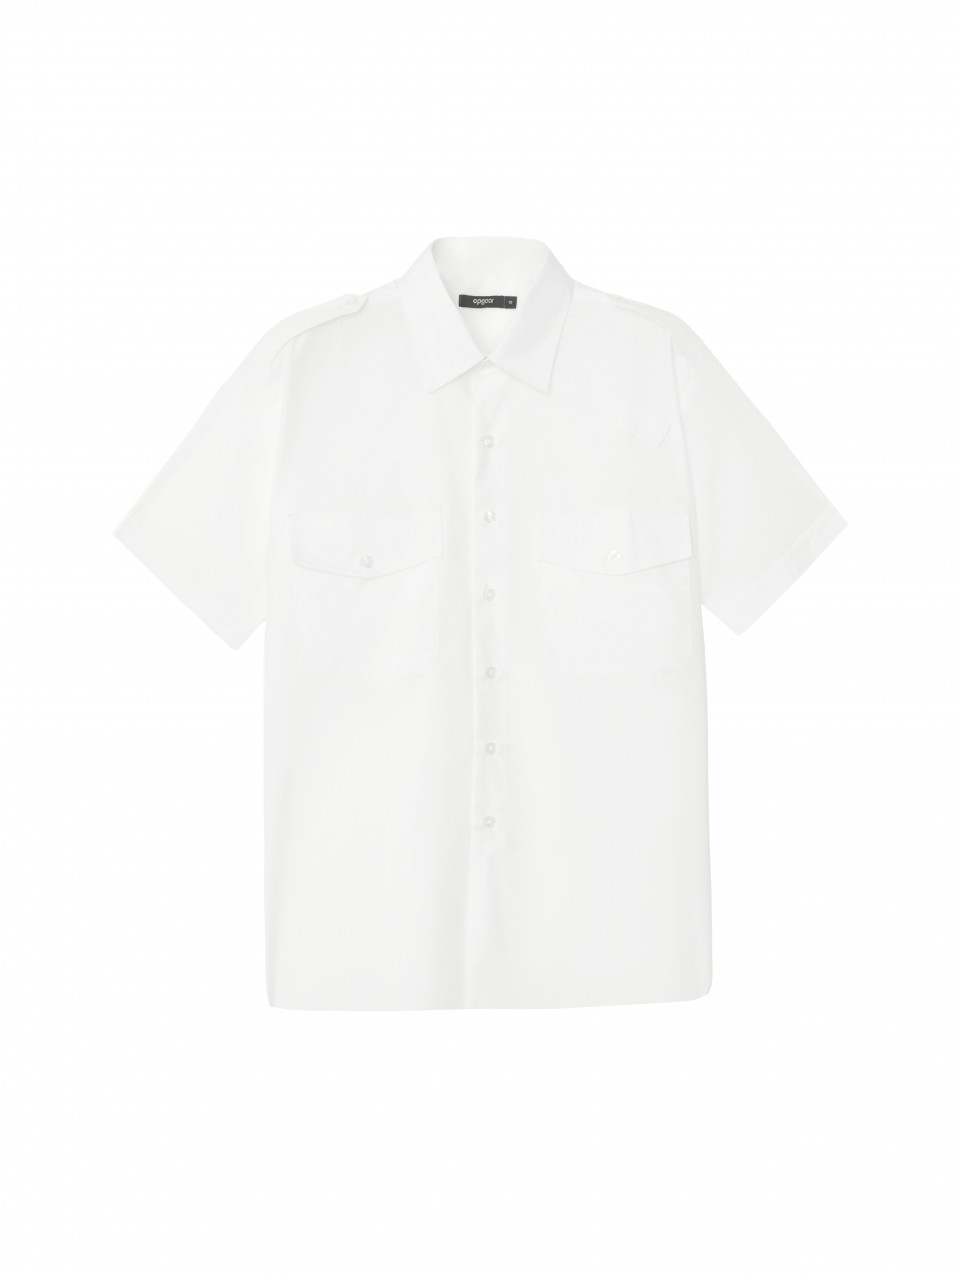 Men’s Premier Short Sleeve Pilot Shirt - OPGear